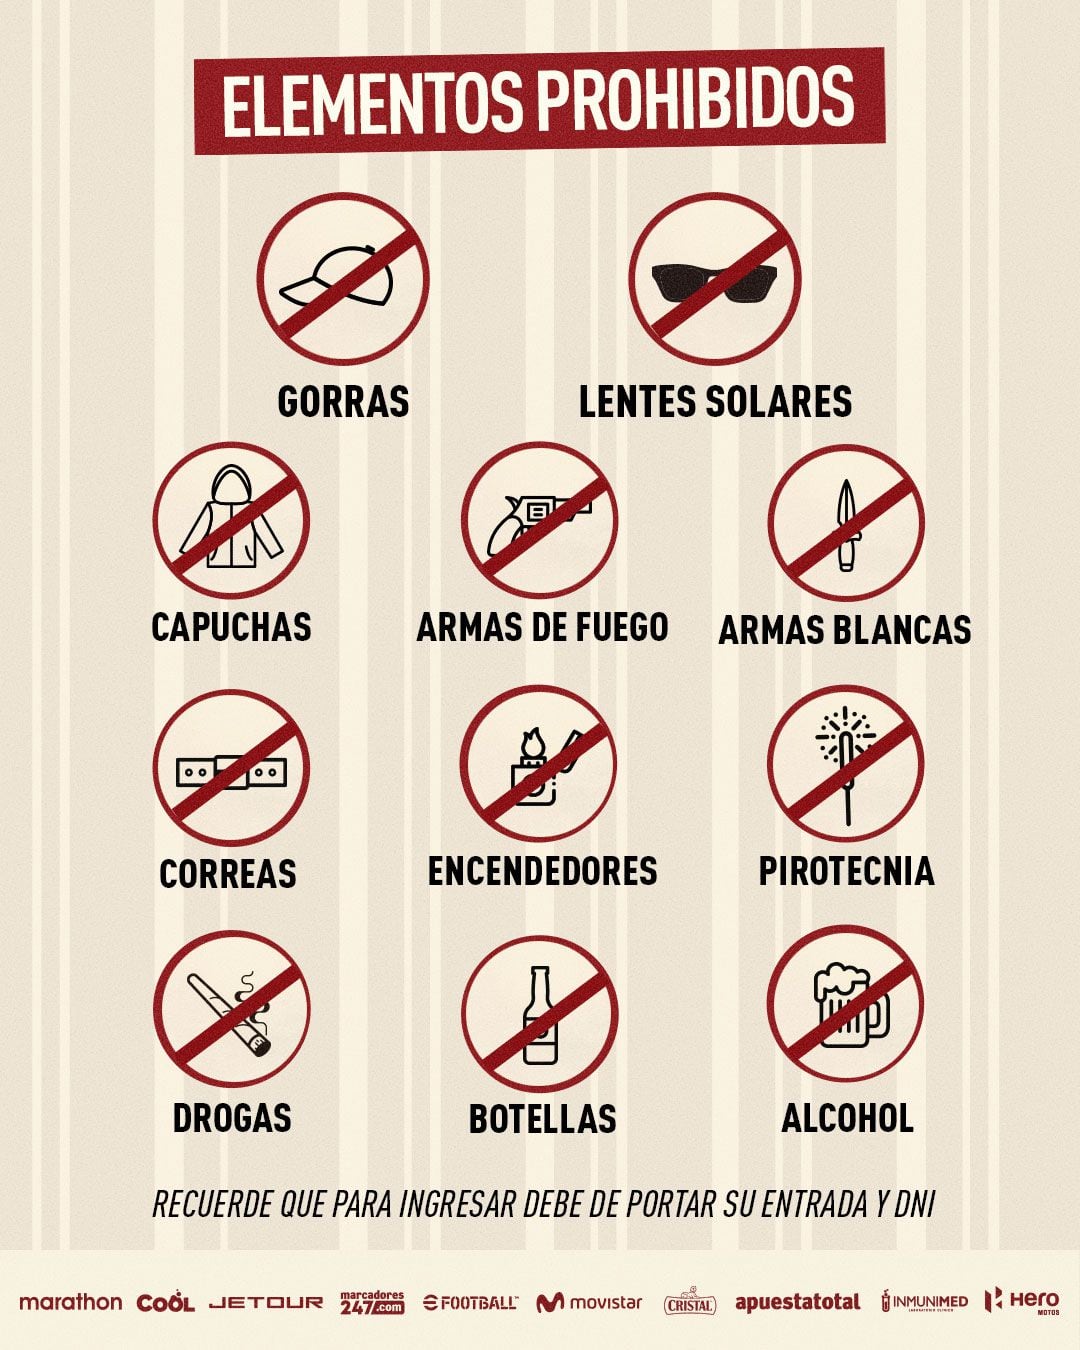 Prohibited elements for the Universitario vs Cristal.